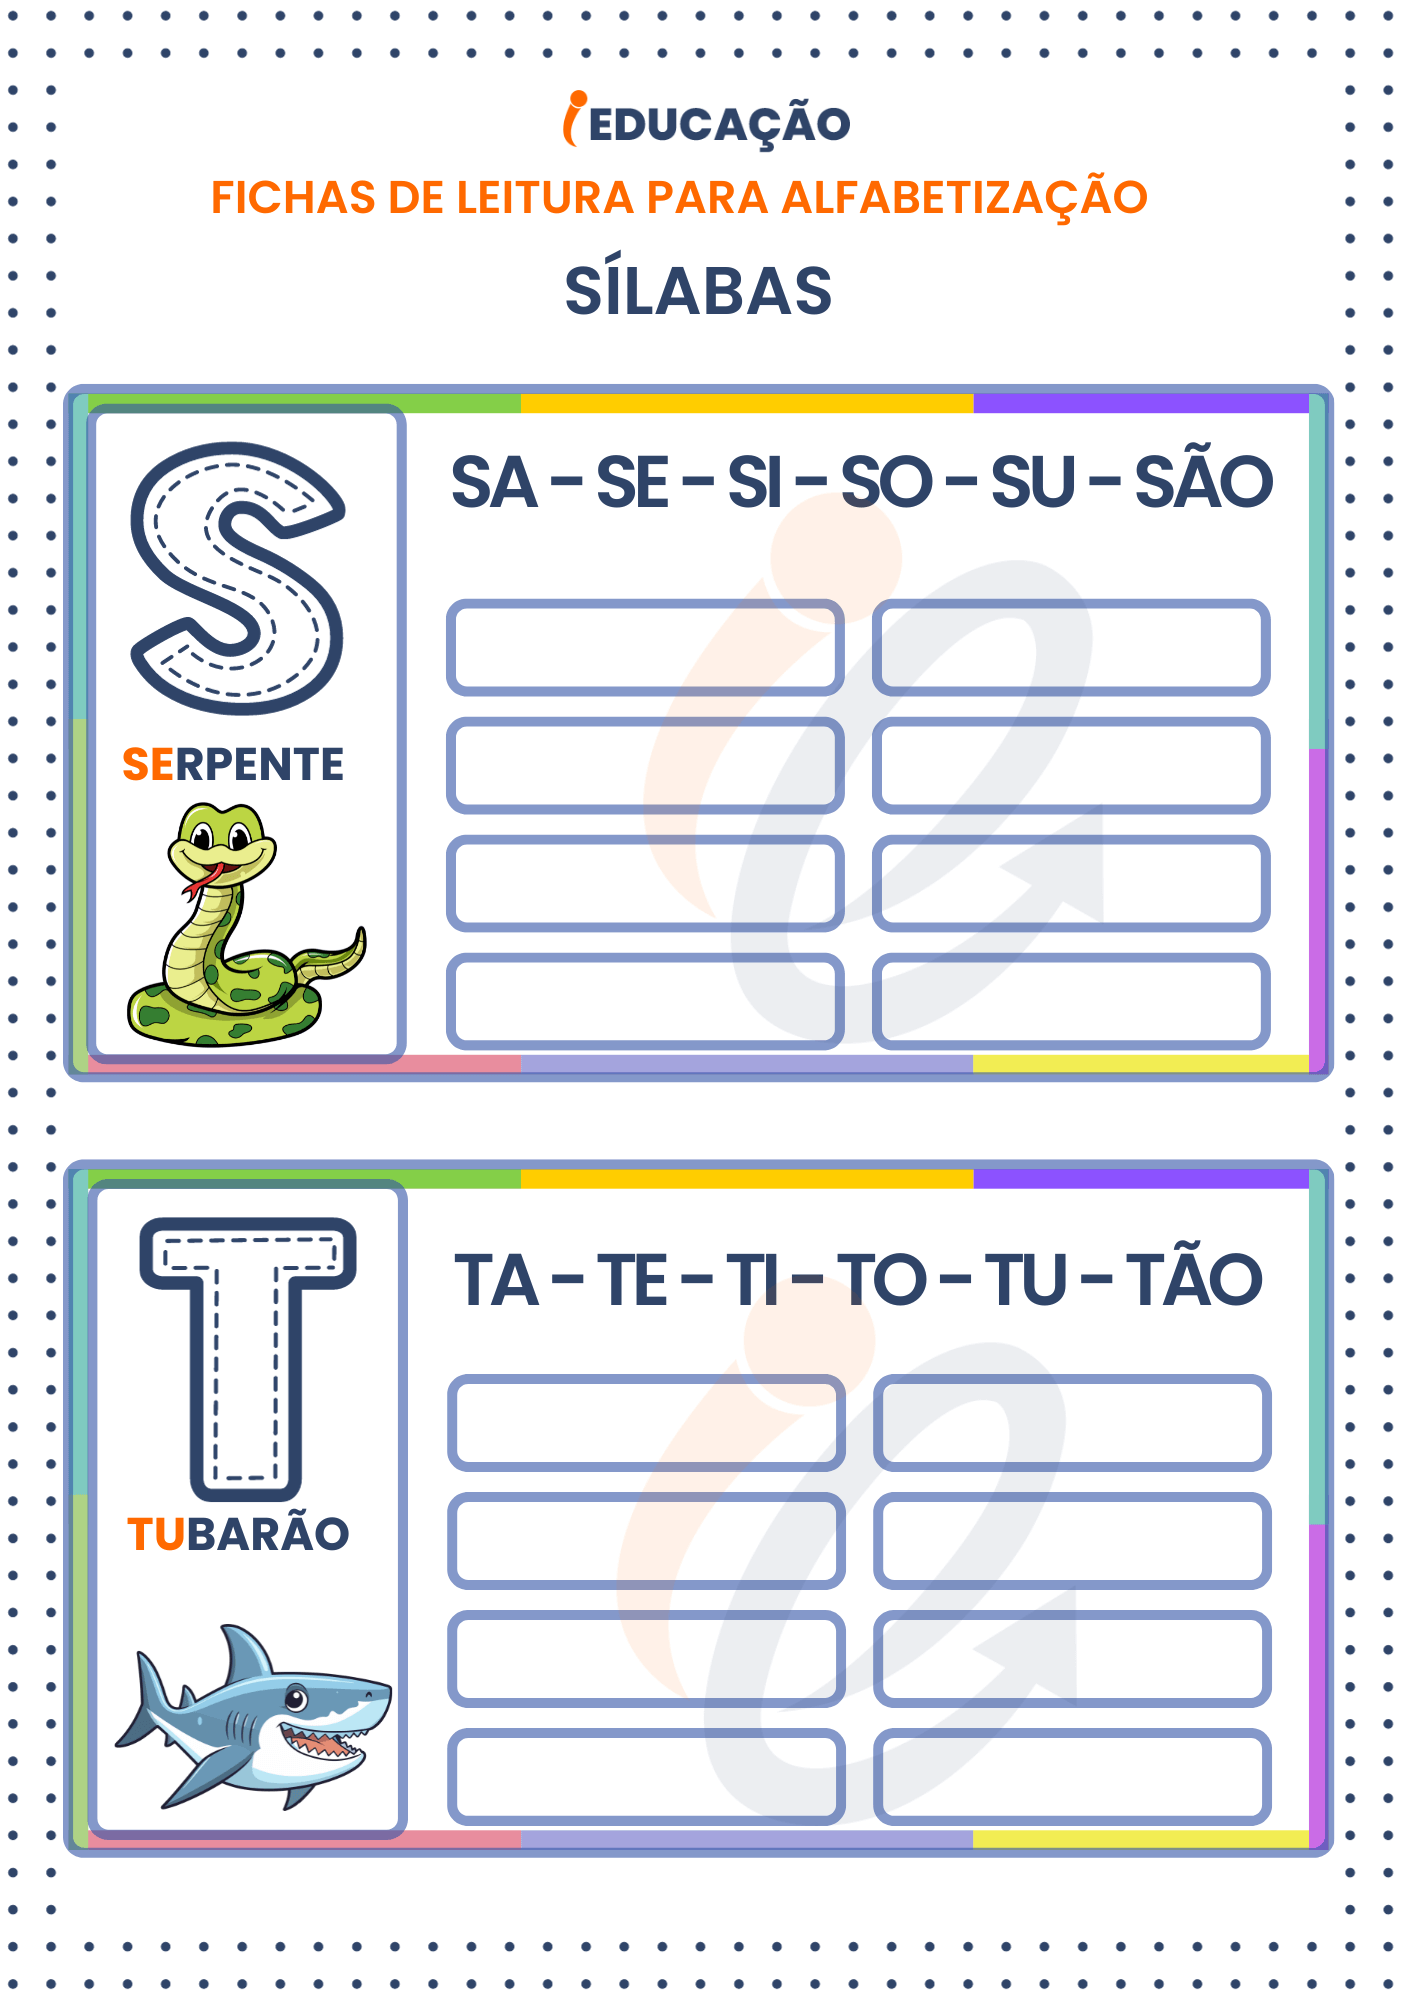 Fichas de Leitura Sílabas para Alfabetização: Sílabas das letras S e T